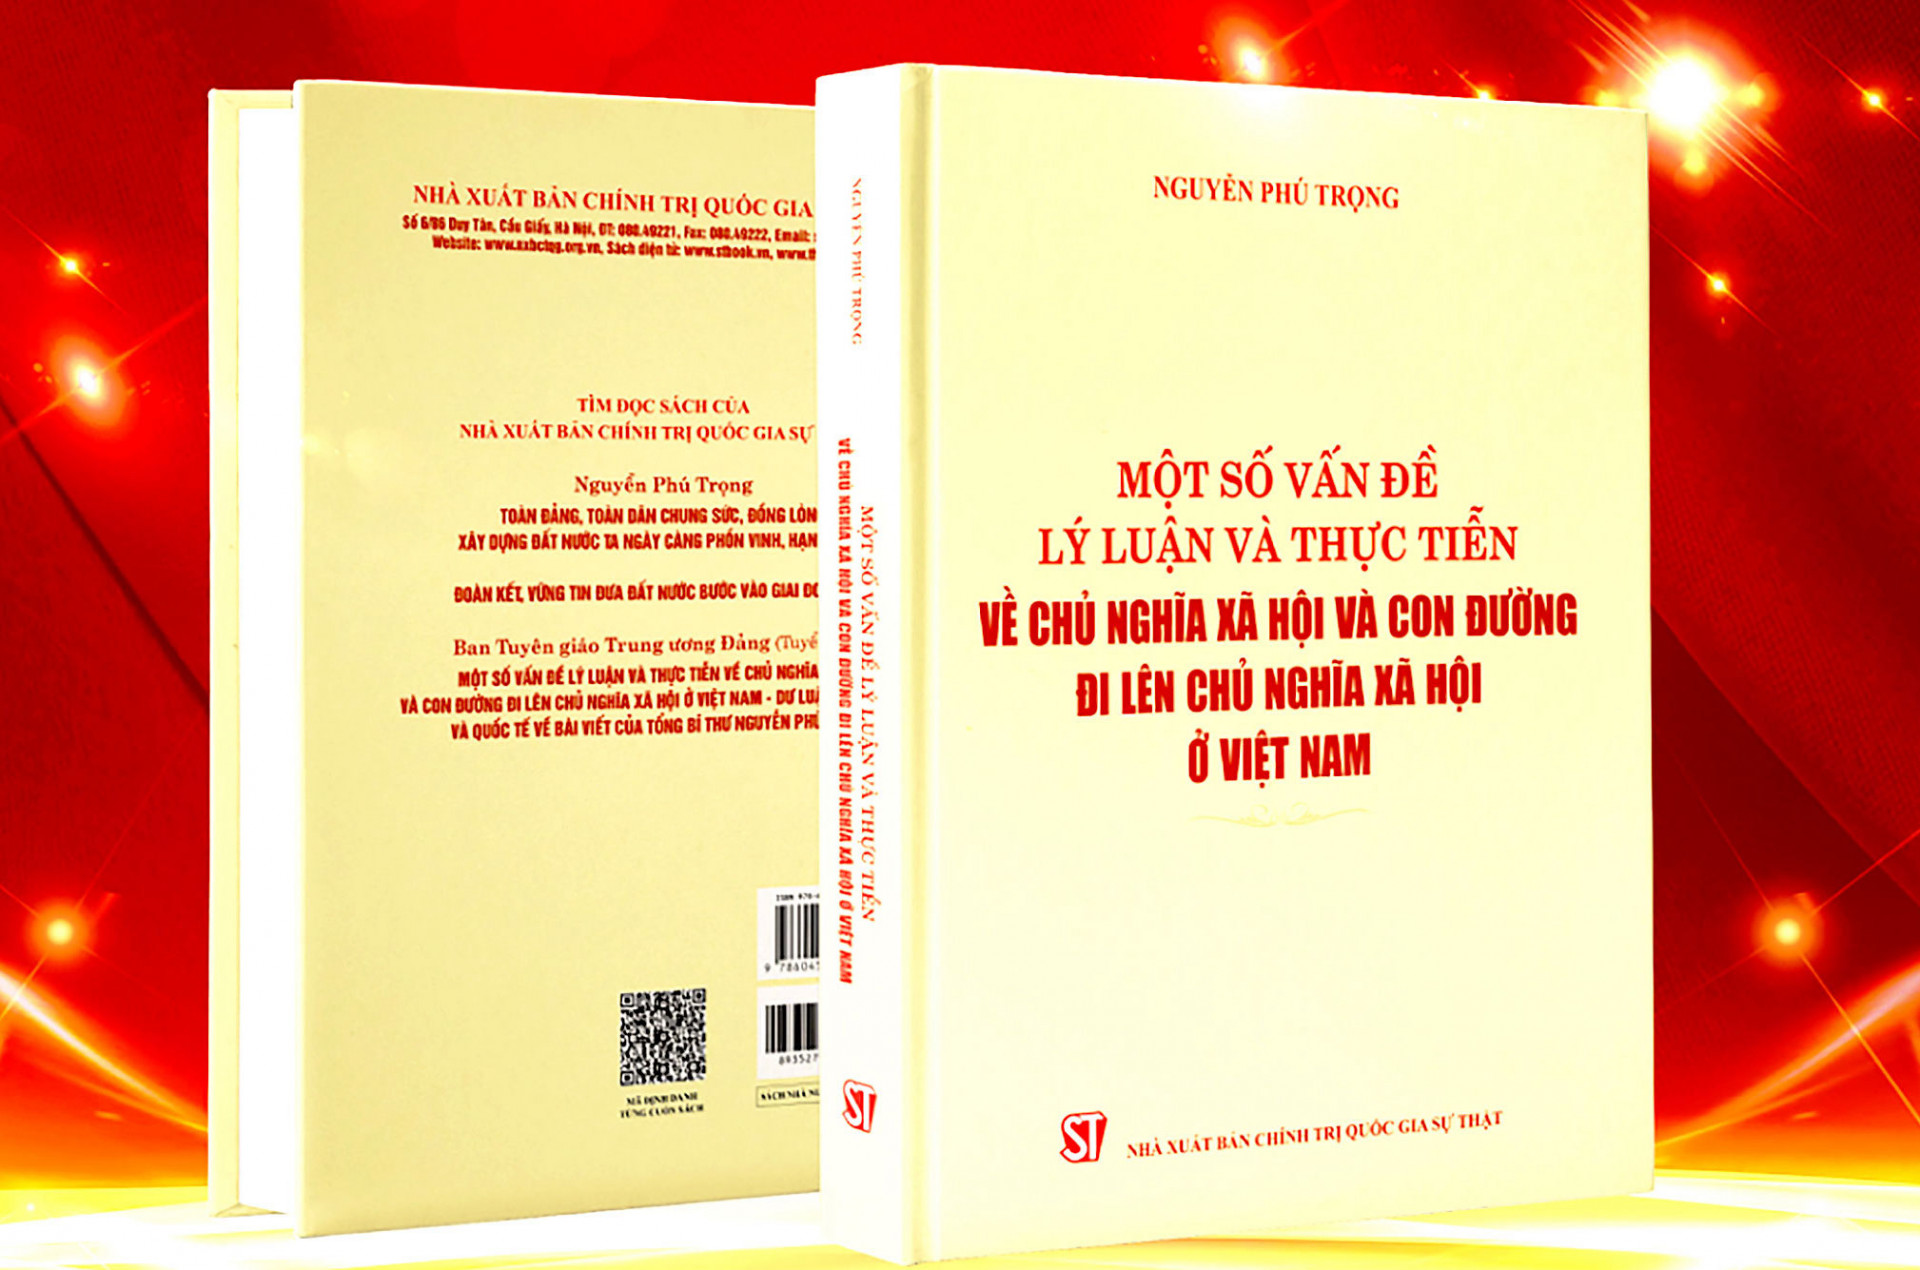 Cuốn sách “Một số vấn đề lý luận và thực tiễn về chủ nghĩa xã hội và con đường đi lên chủ nghĩa xã hội ở Việt Nam &quot; của Tổng Bí thư Nguyễn Phú Trọng.